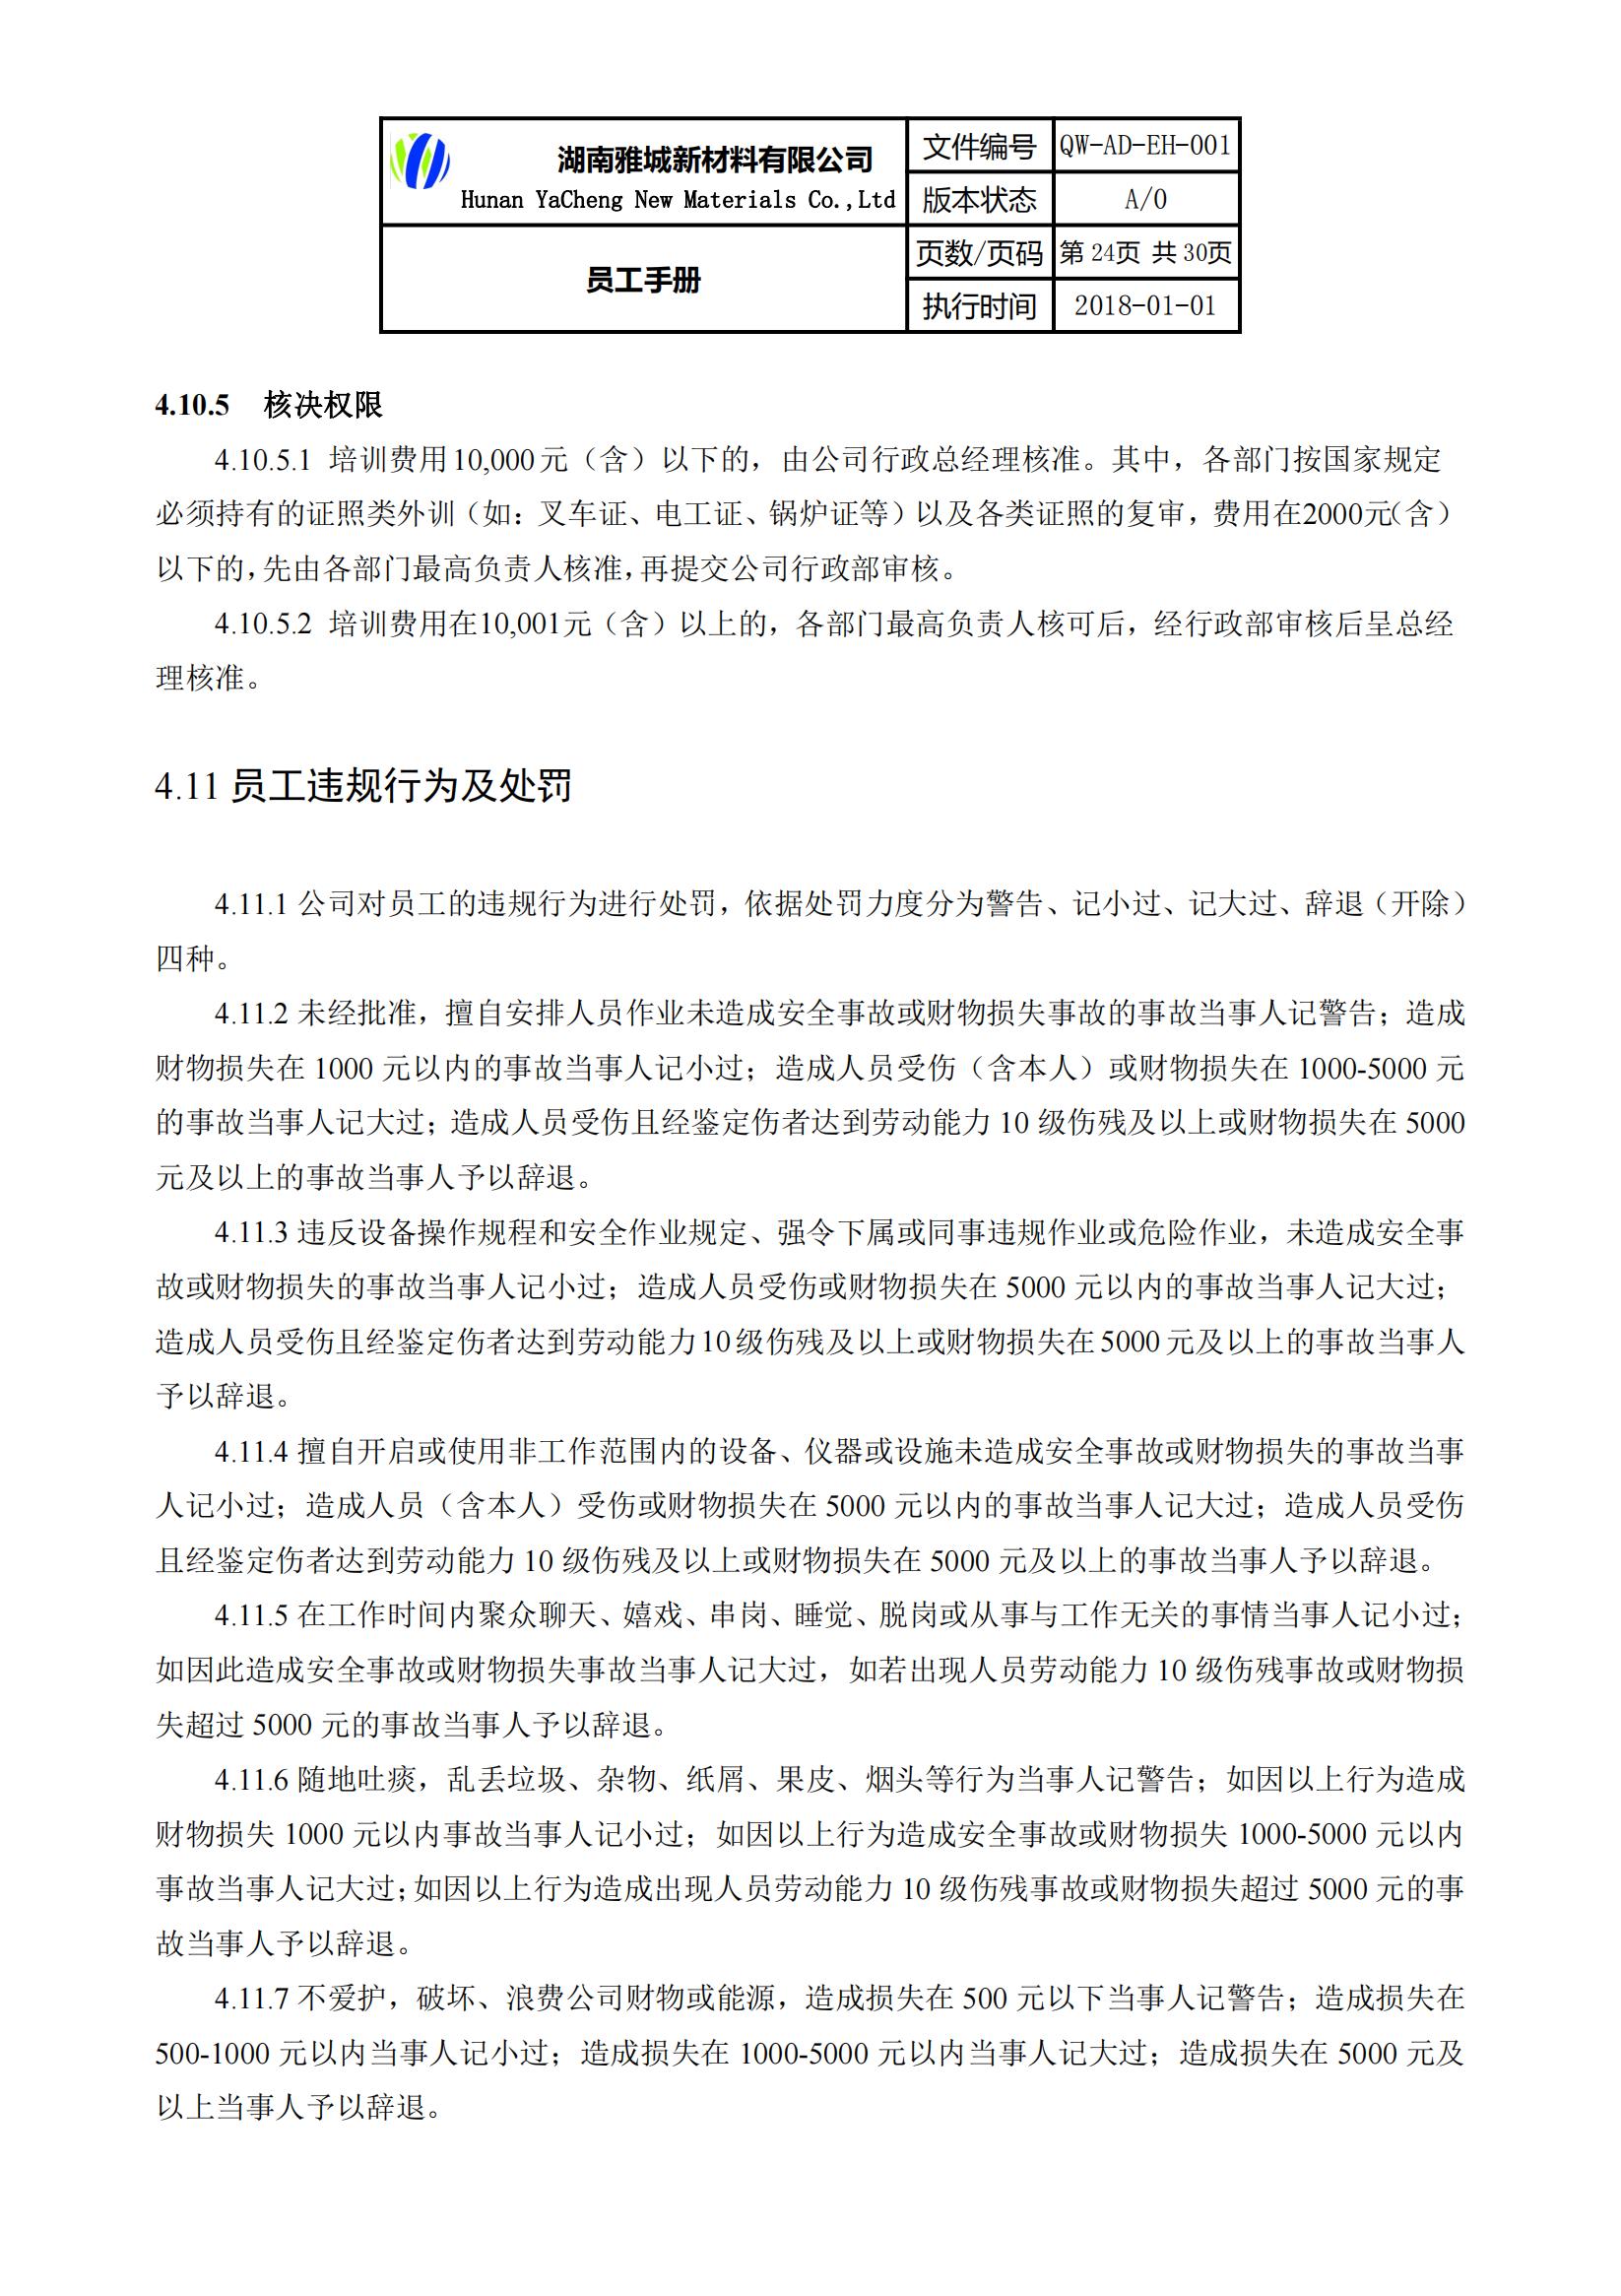 湖南雅城新材料有限公司《员工手册》公示